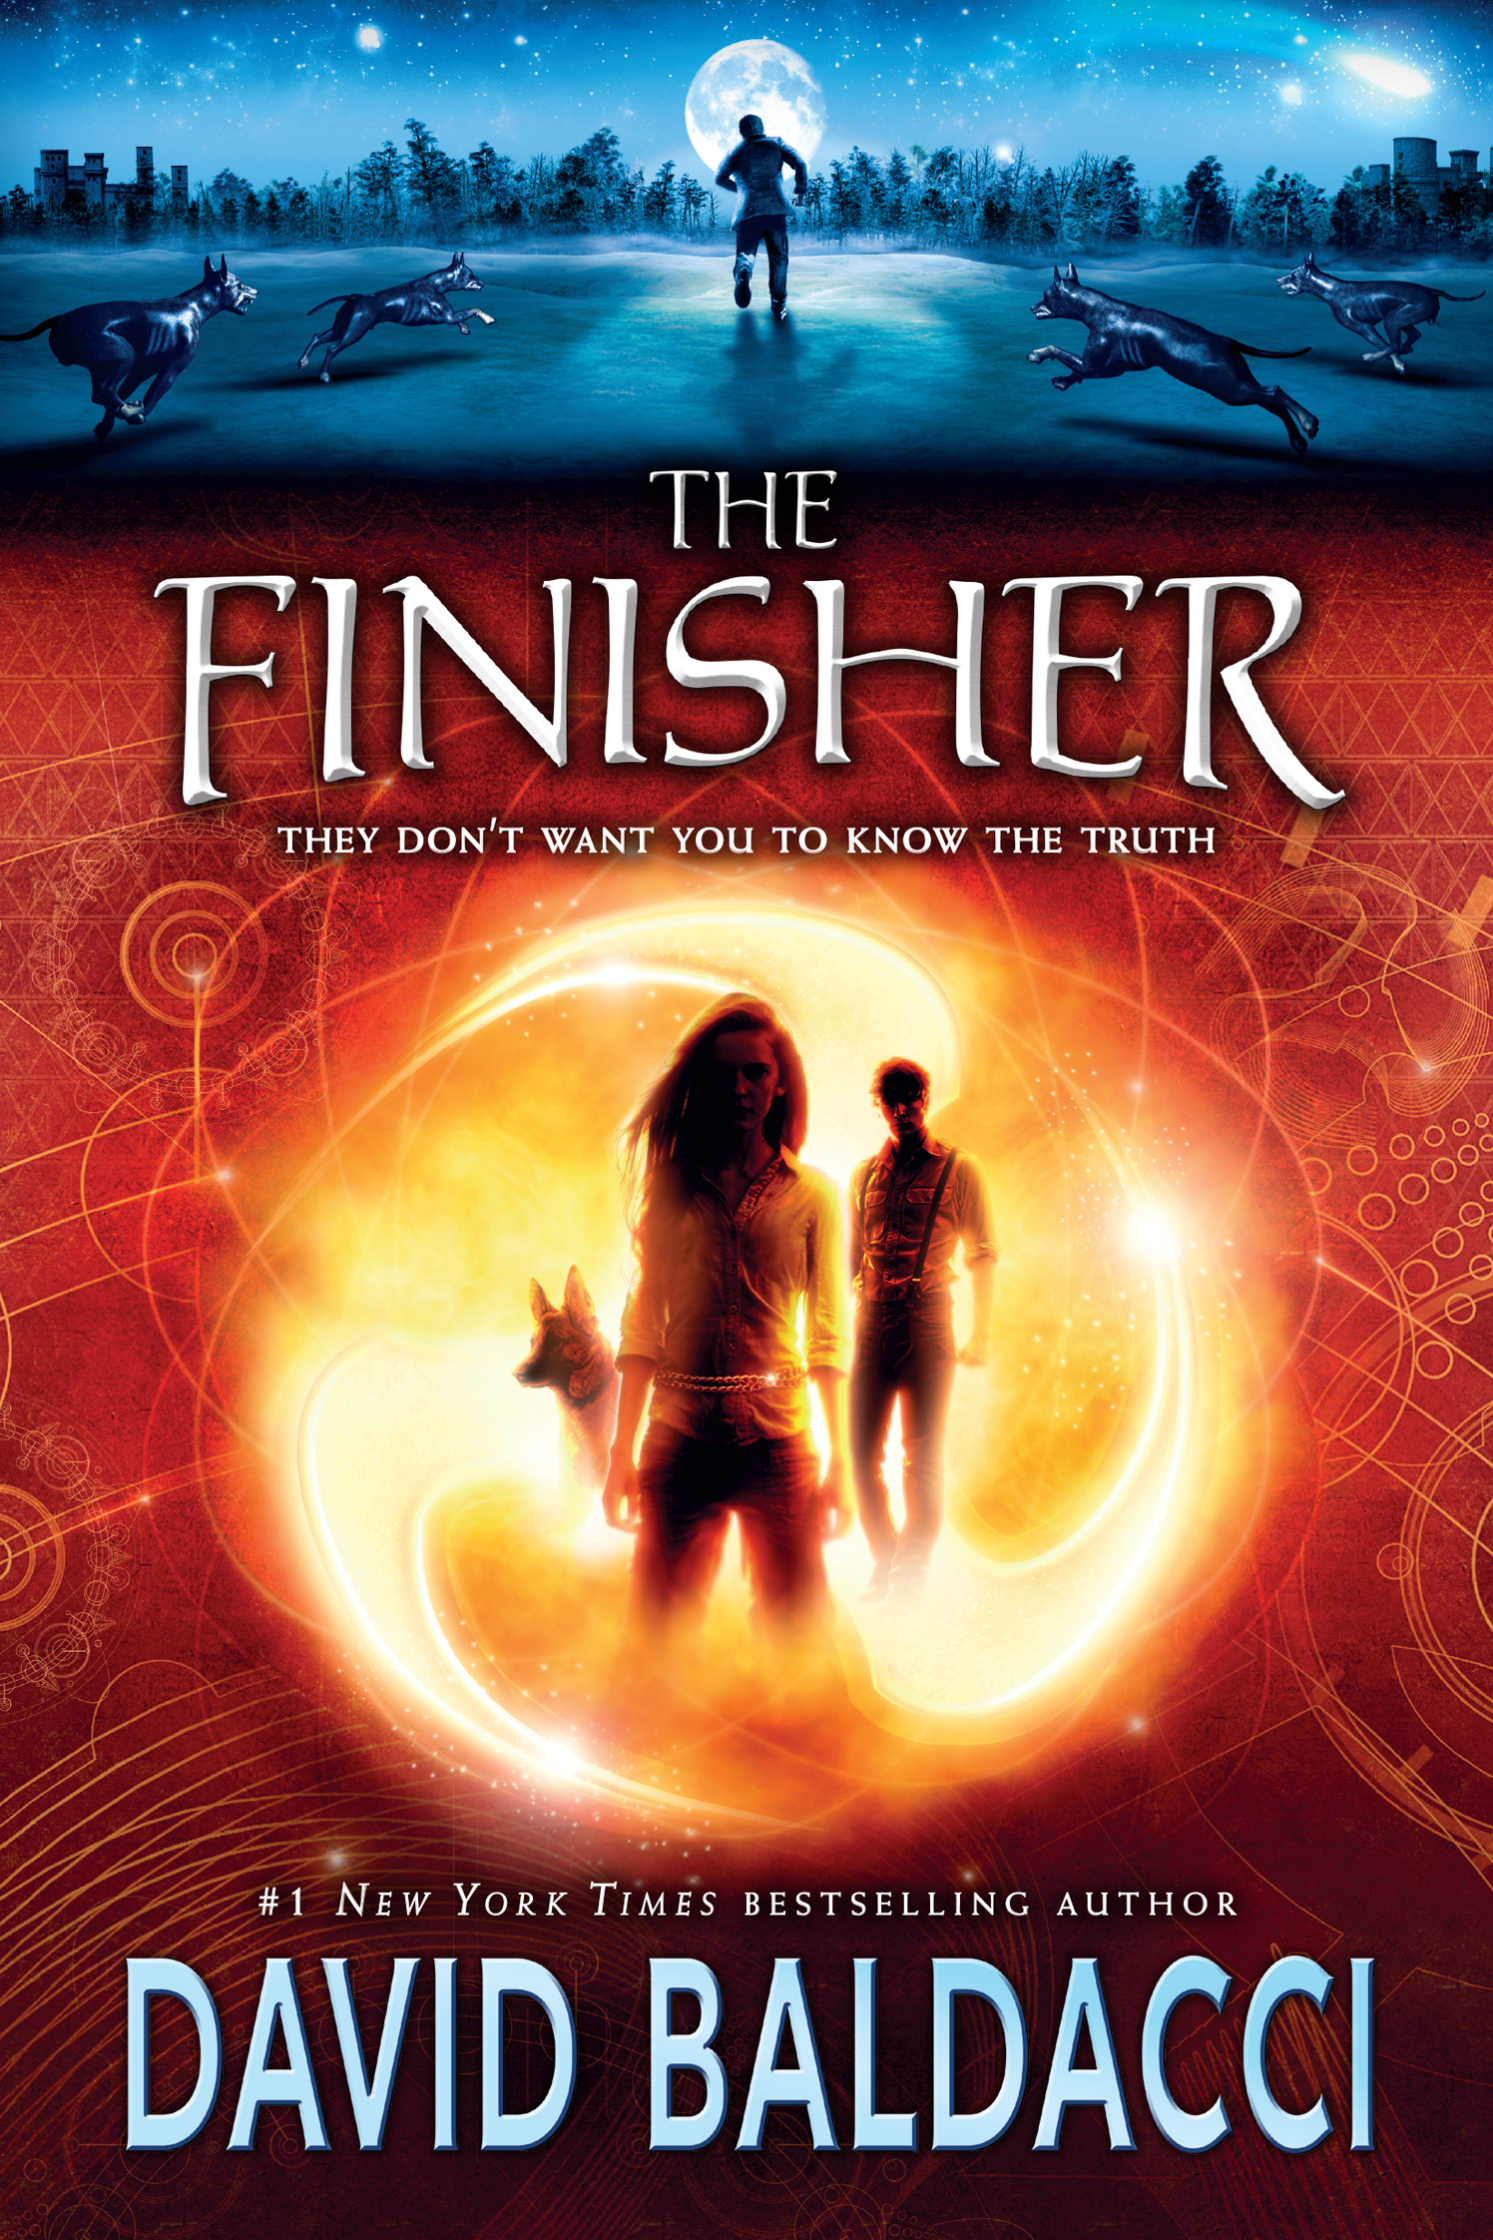 The Finisher / David Baldacci